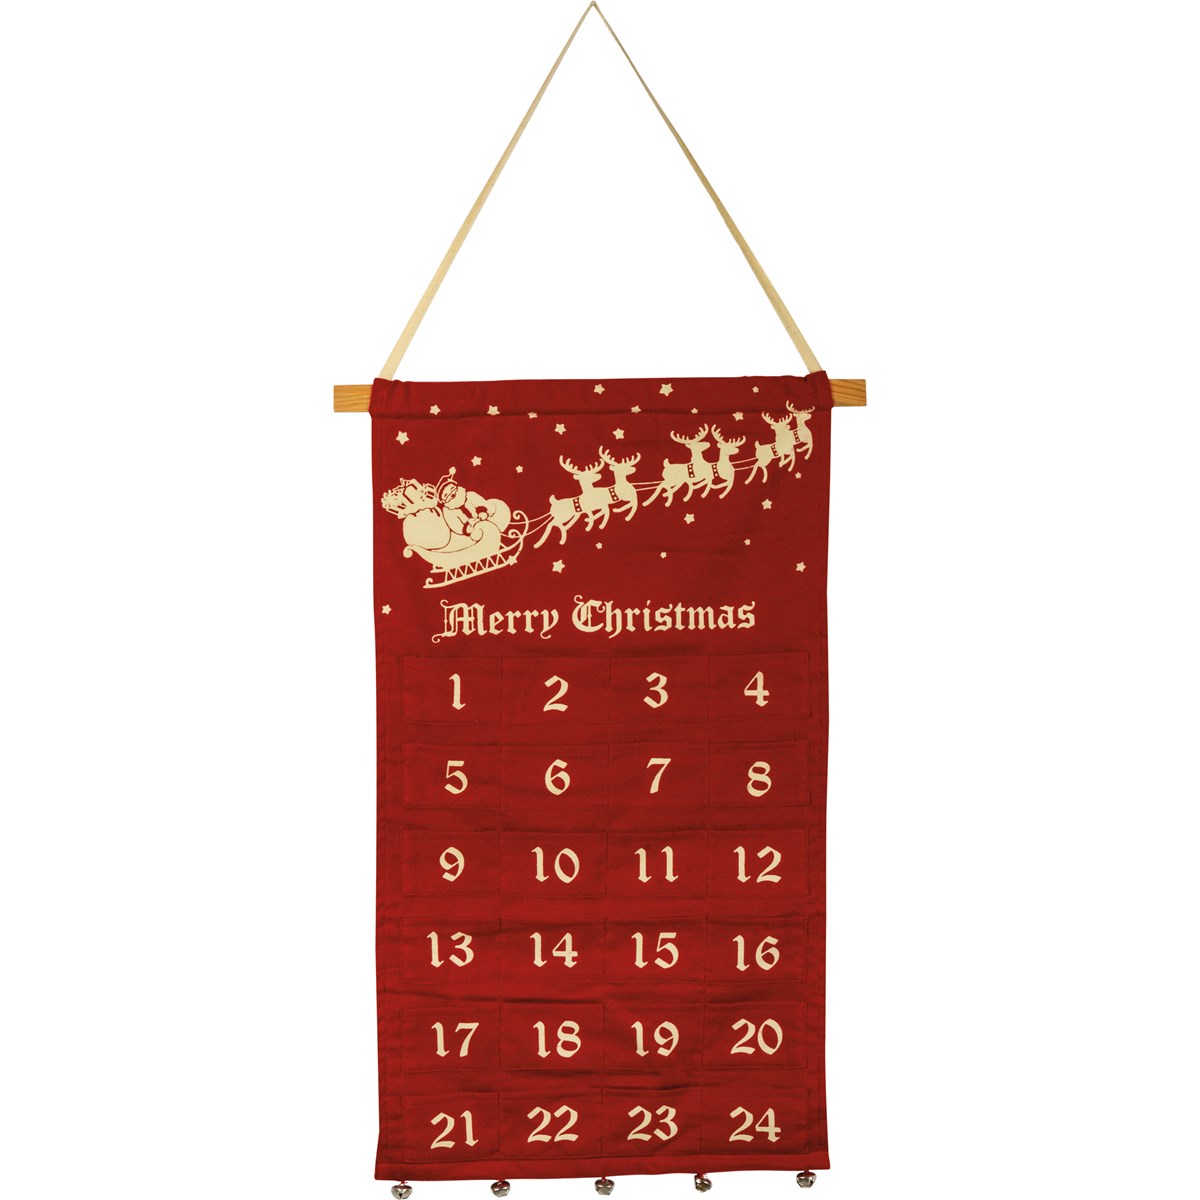 Christmas Wall Countdown - Felt, Cotton, Wood, Metal